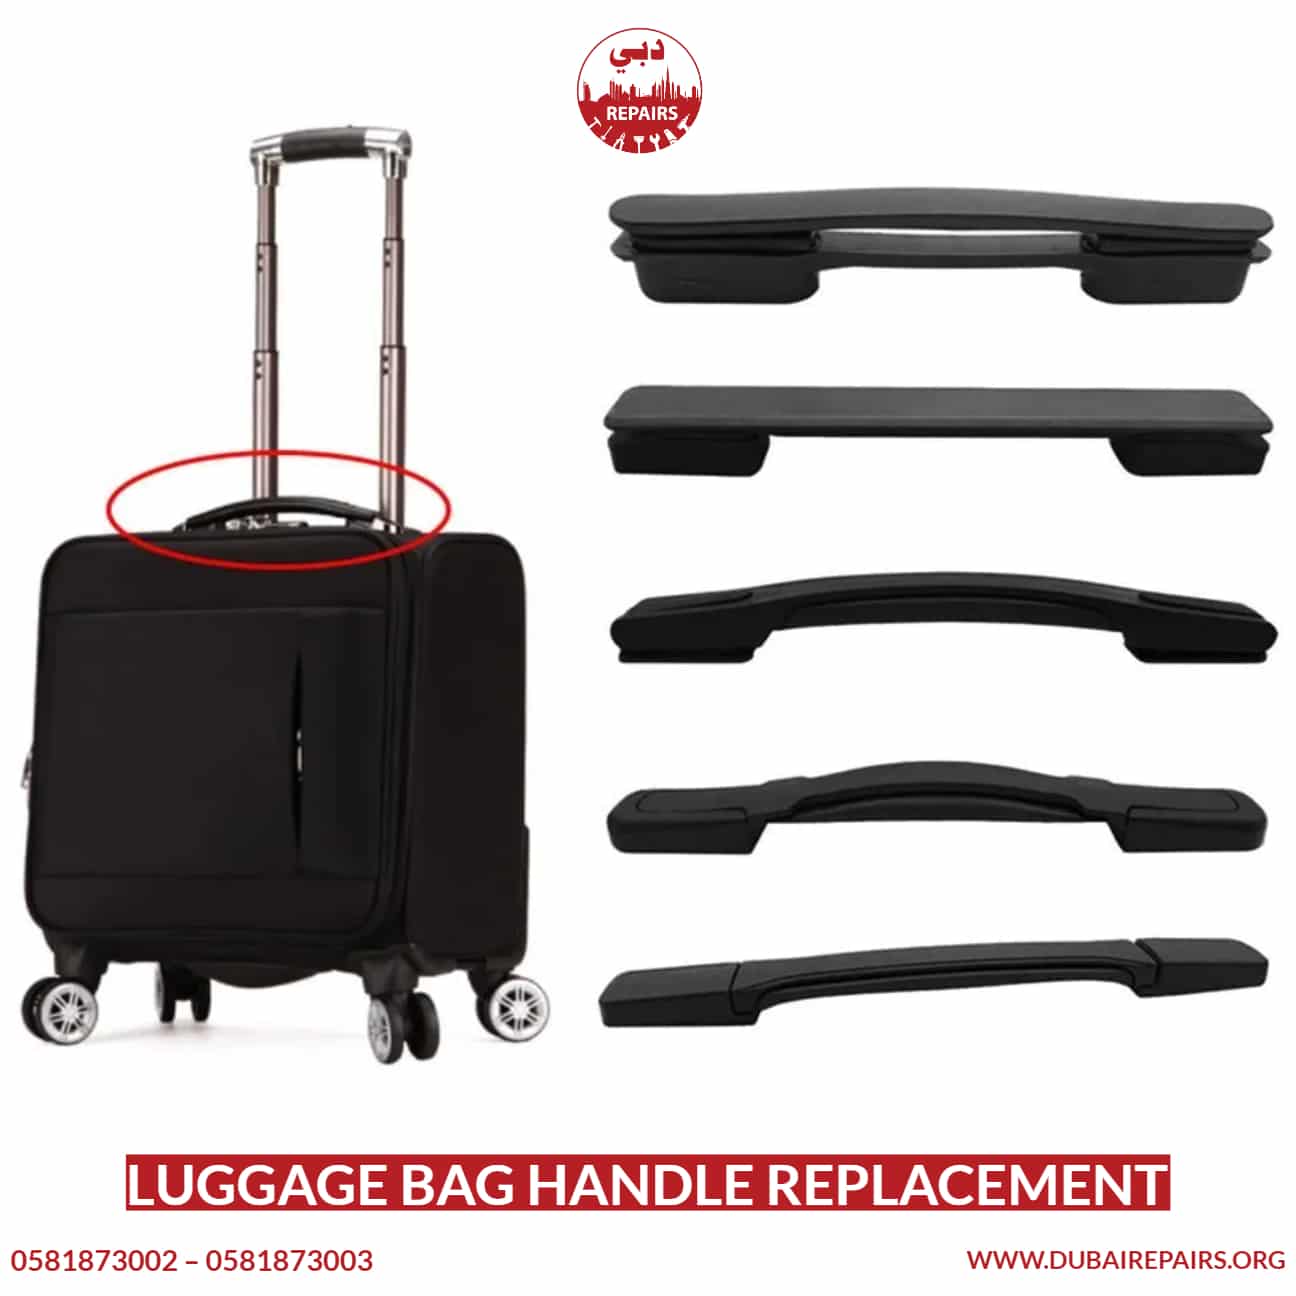 Luggage Bag Handle Replacement - 0581873003 - Dubai Repairs